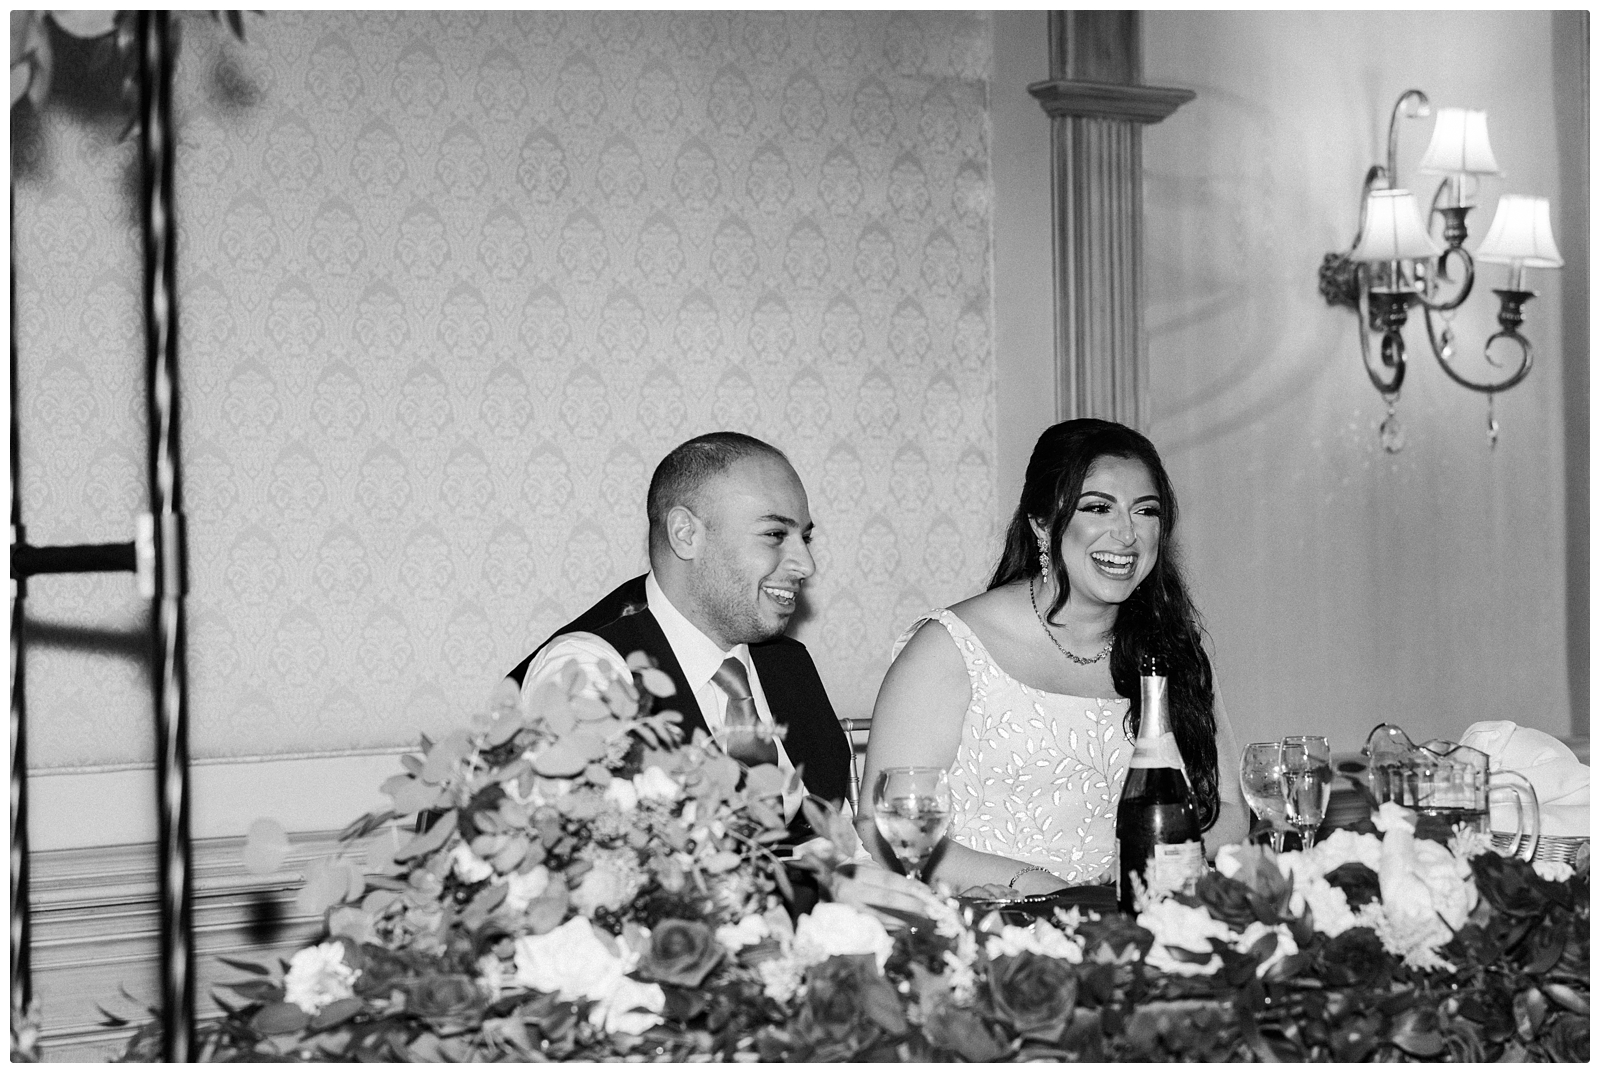 Petruzello's wedding reception